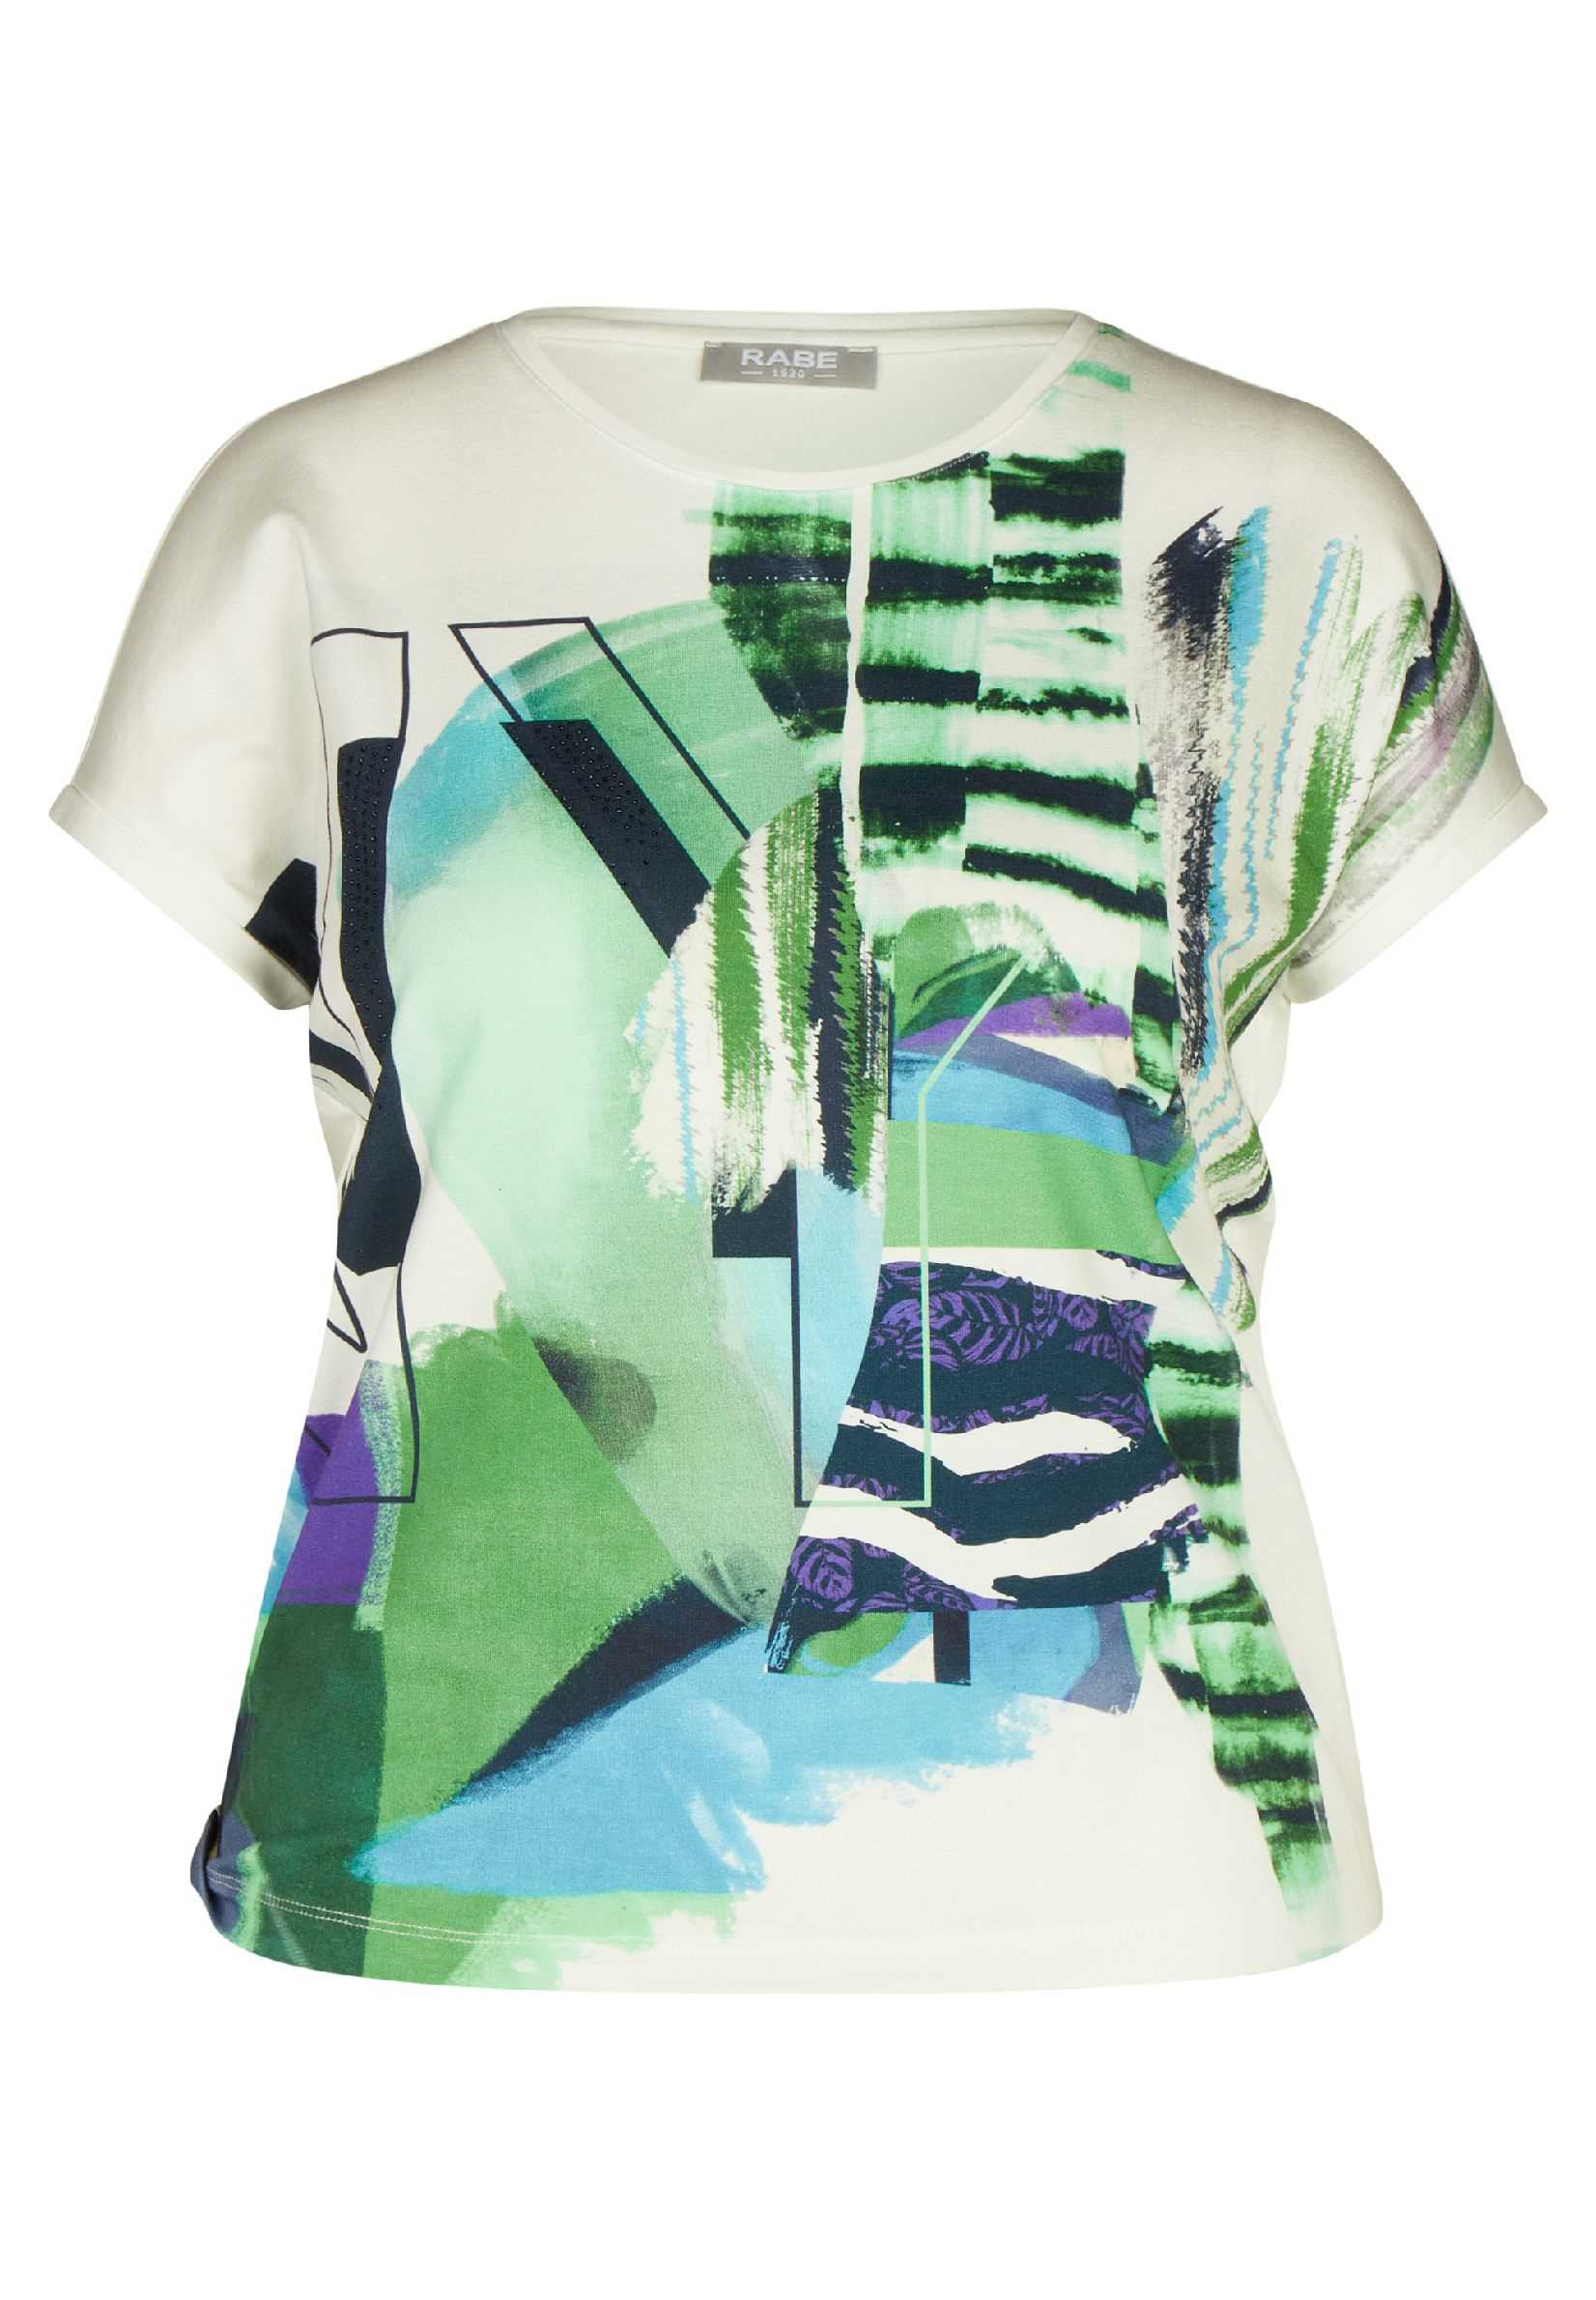 Rabe T-Shirt Natur Groen | Print Exclusief E / Mariëlle Mode Daniëlle